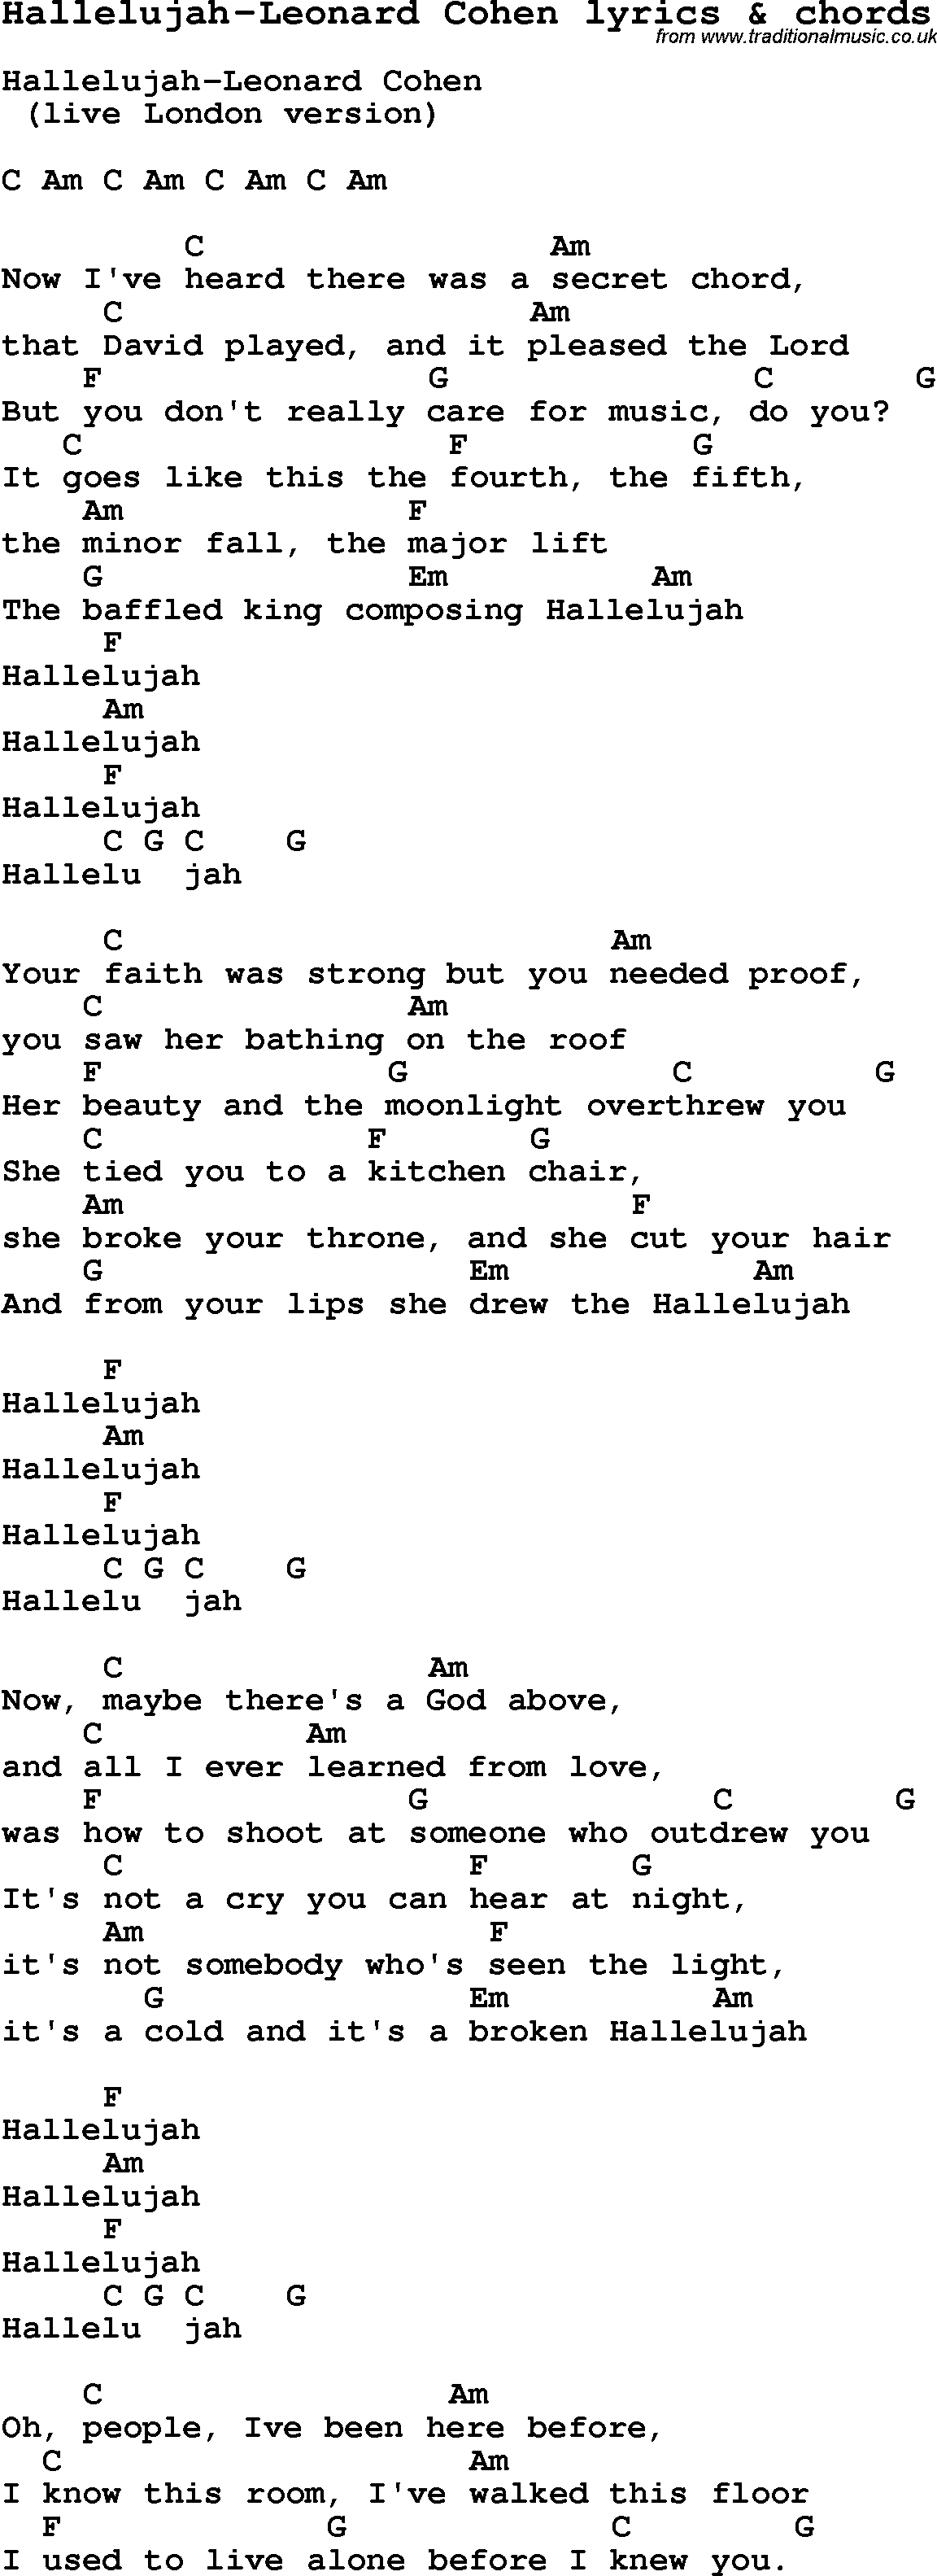 Love Song Lyrics for: Hallelujah-Leonard Cohen with chords for Ukulele, Guitar Banjo etc.